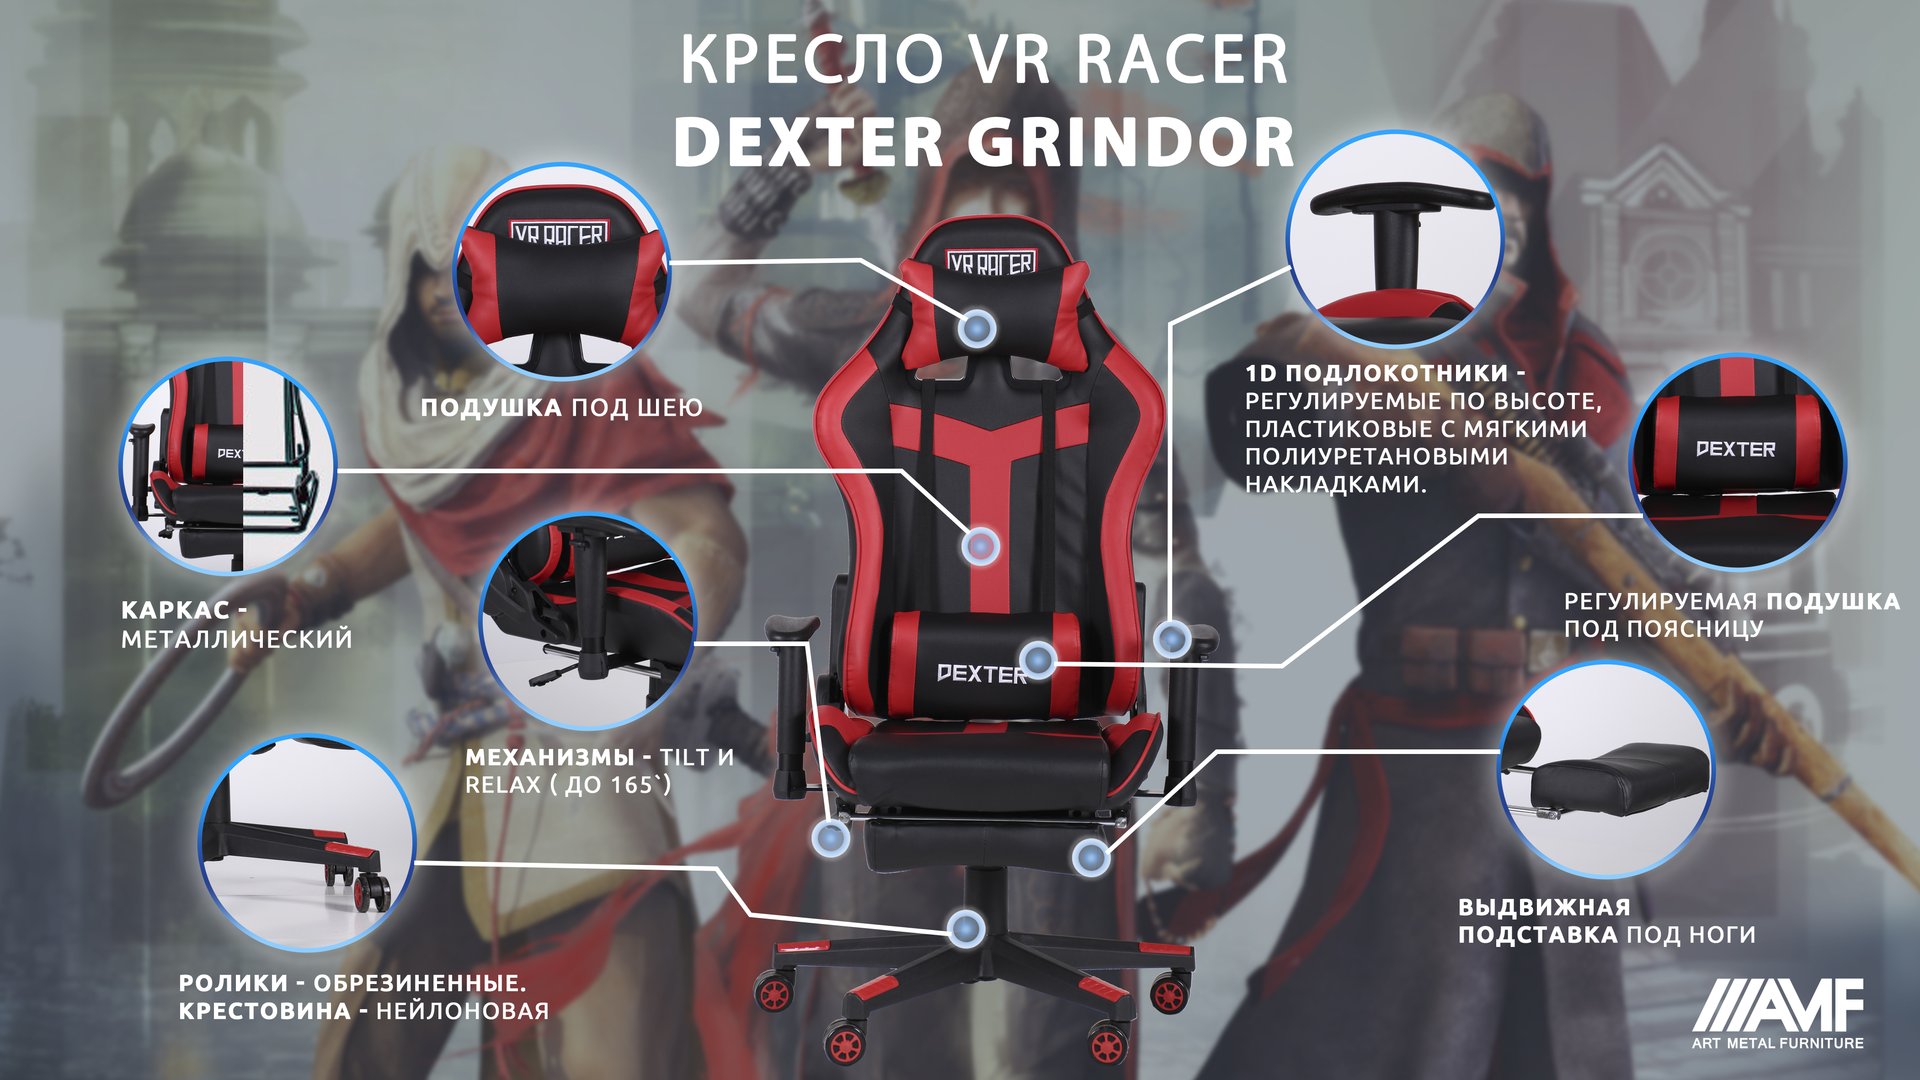 Кресло VR Racer Dexter Grindor описание